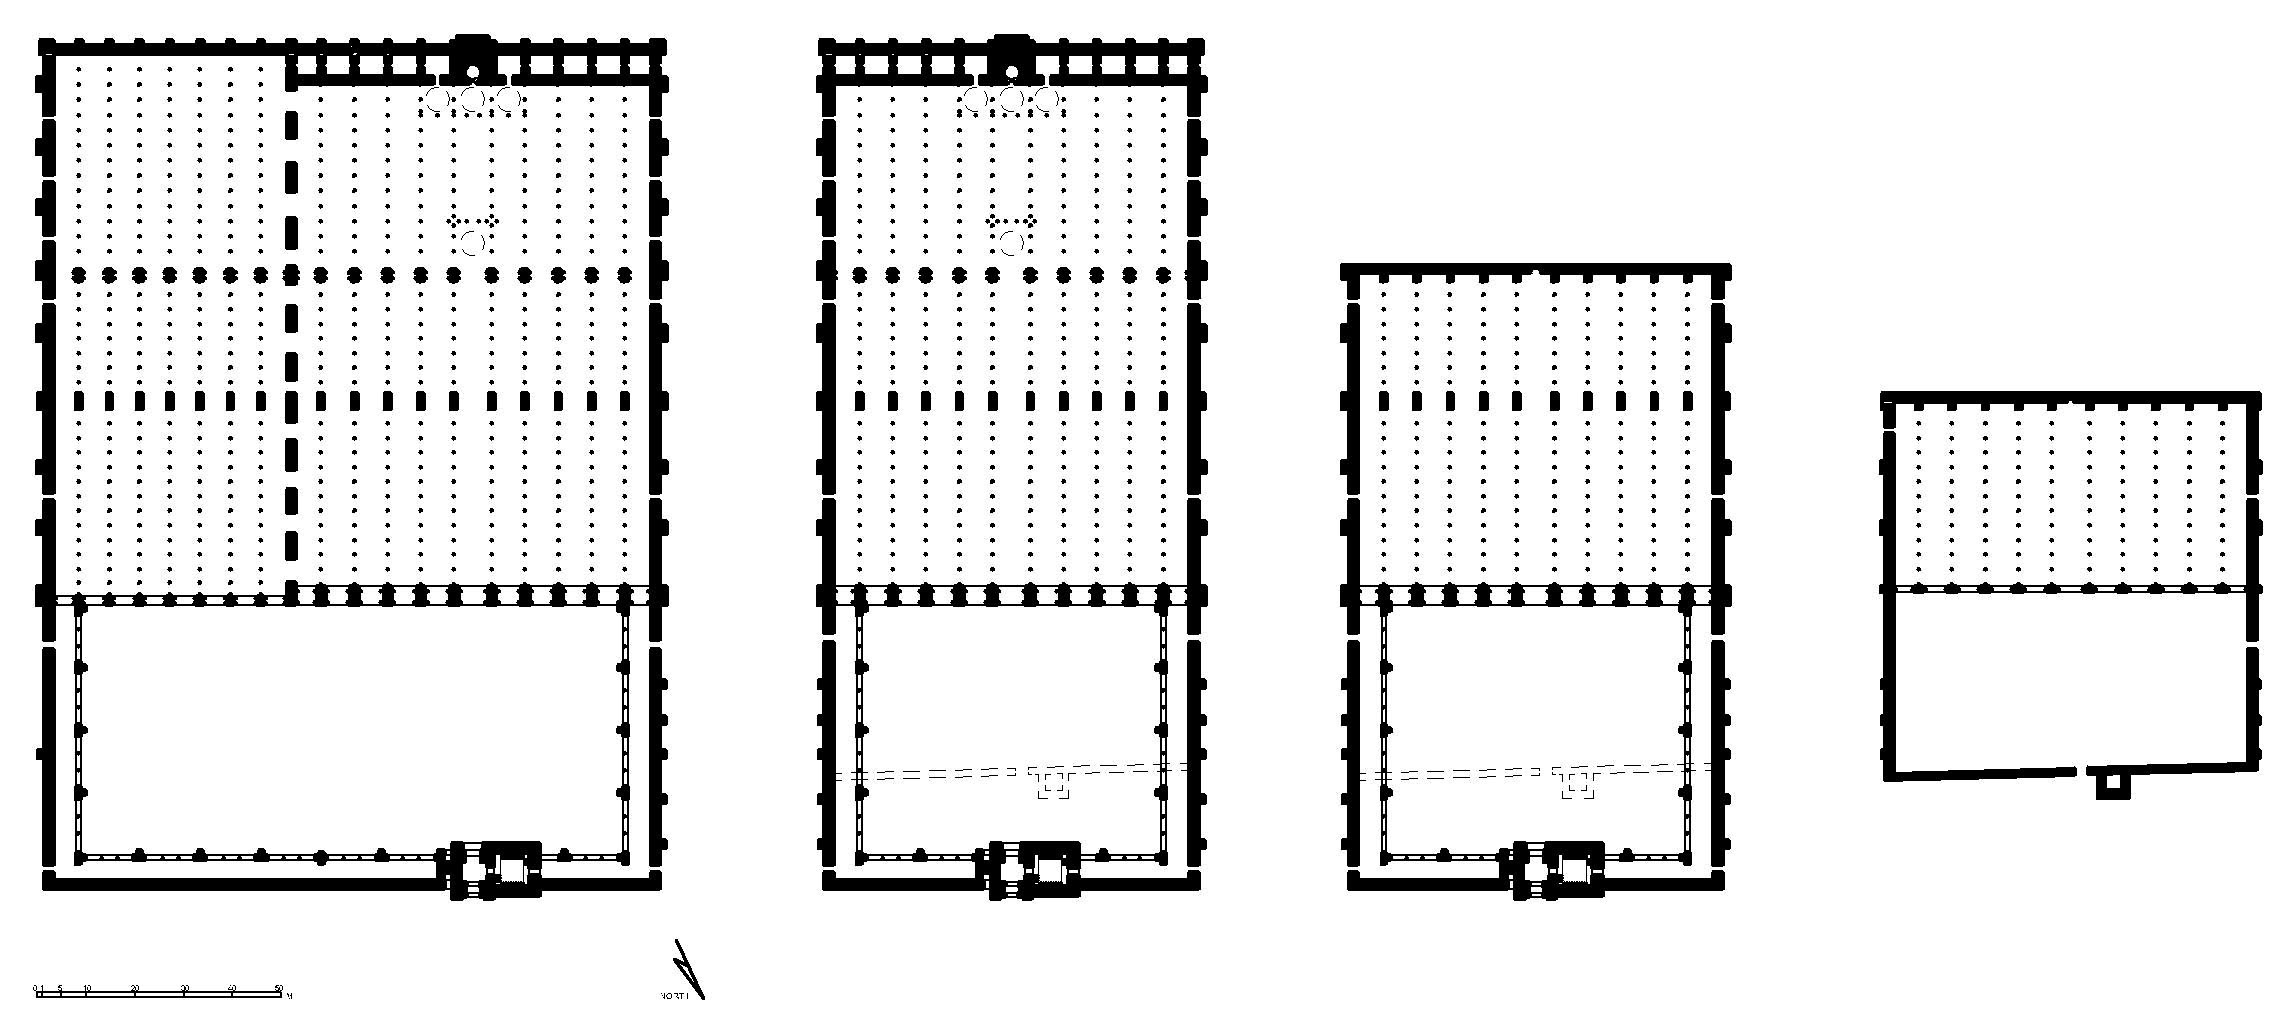 Mezquita de Córdoba - Floor plans showing four phases of development